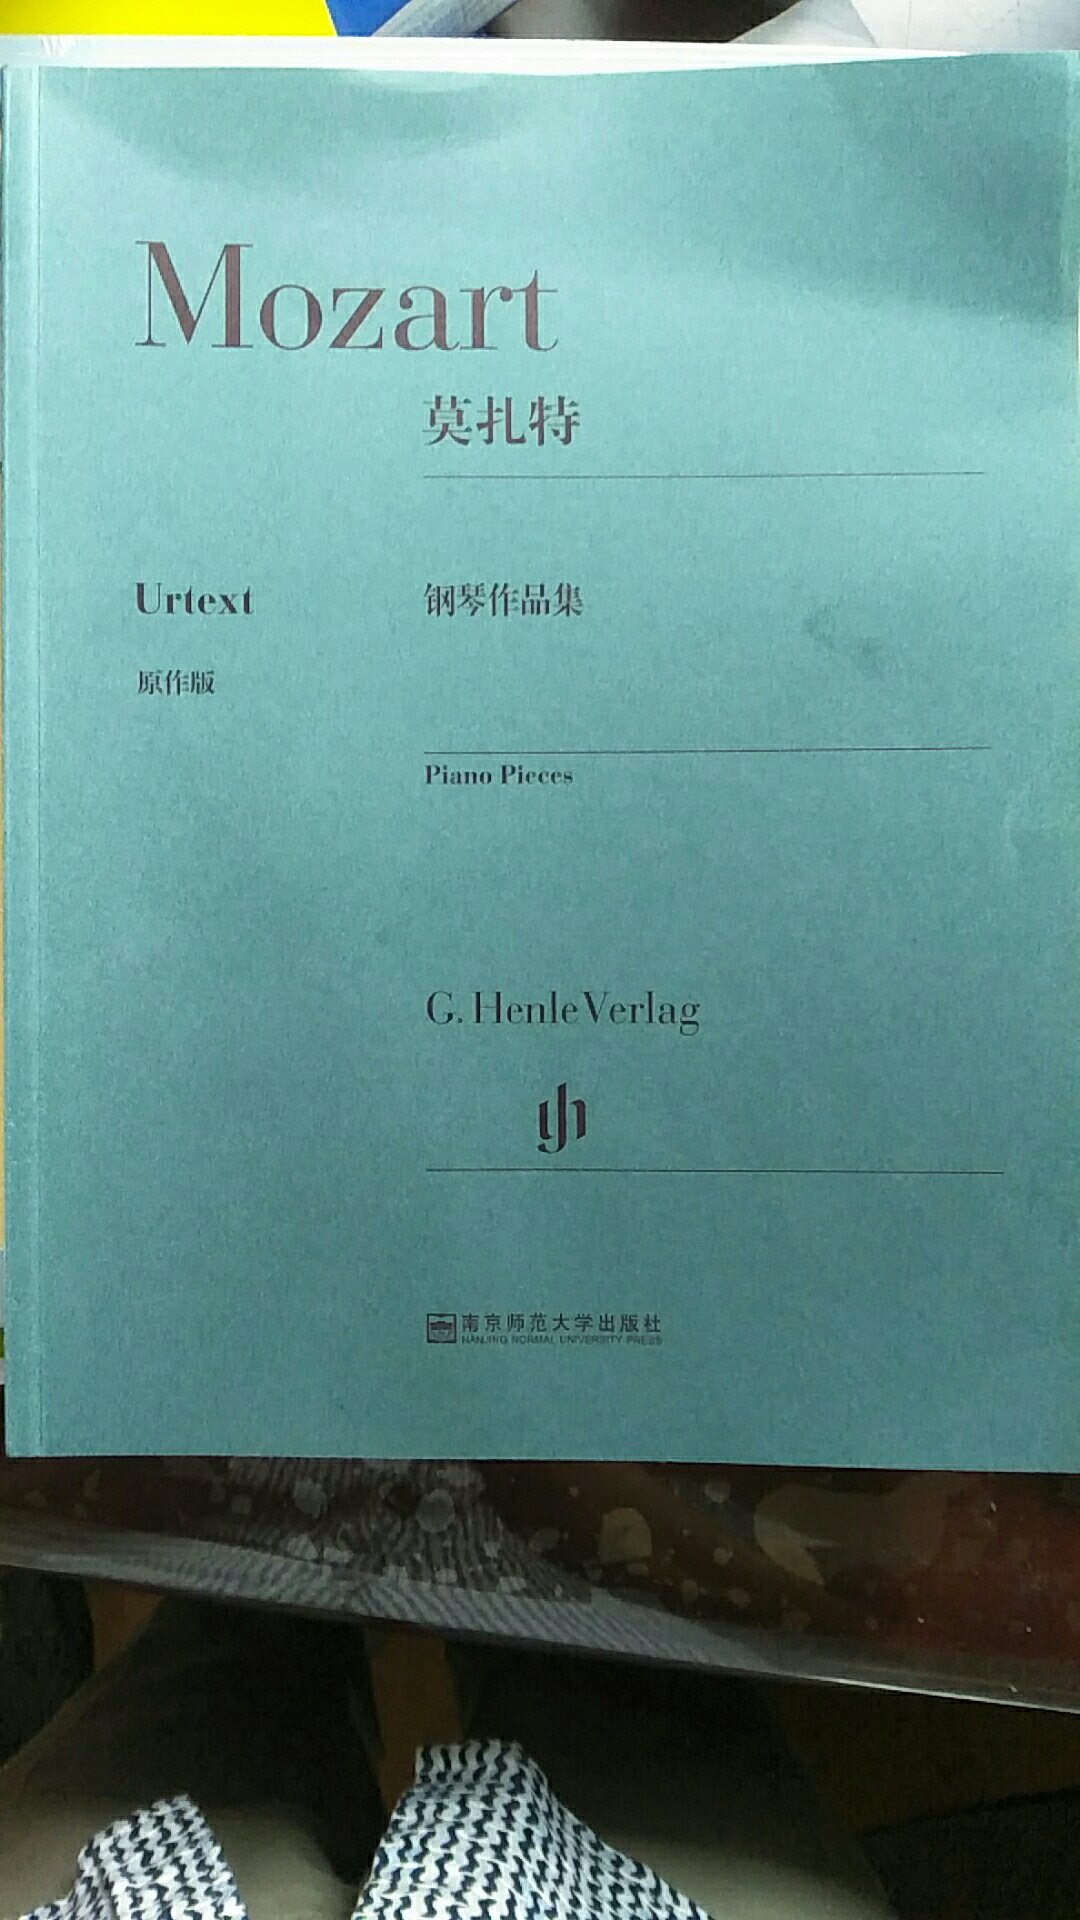 除奏呜曲和变奏曲外莫扎特的其他所有作品合集，亨乐原作版，厚厚一本，值得拥有。